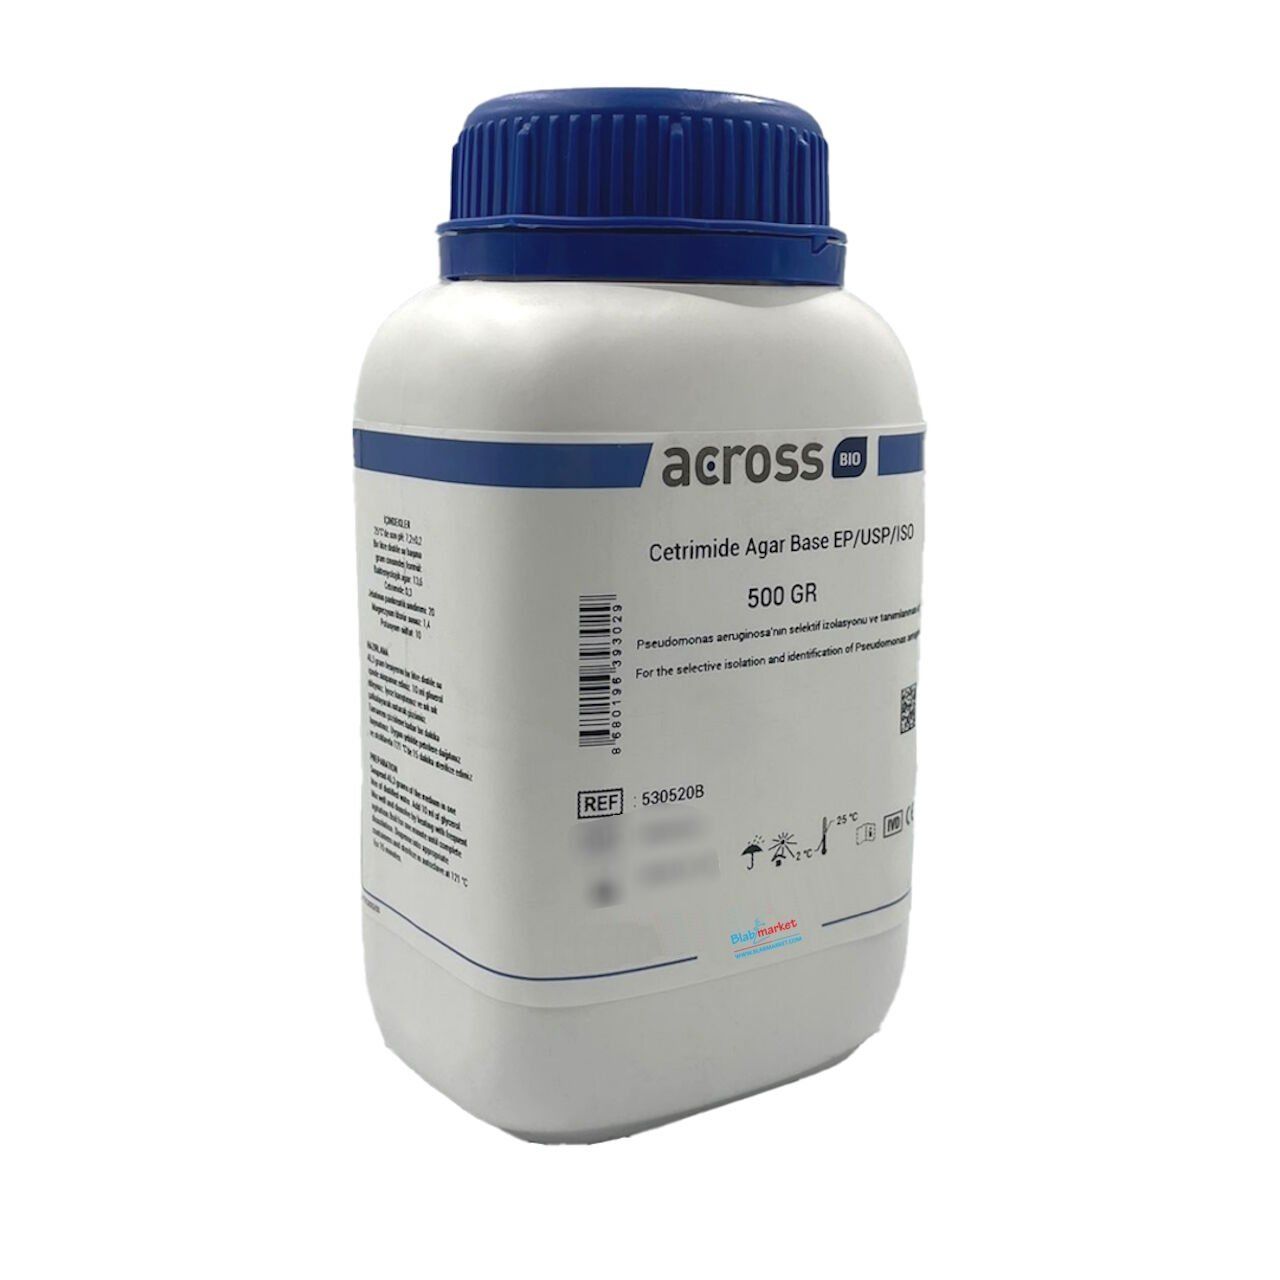 Across Bio 530520B Cetrimide Agar Base EP-USP-ISO